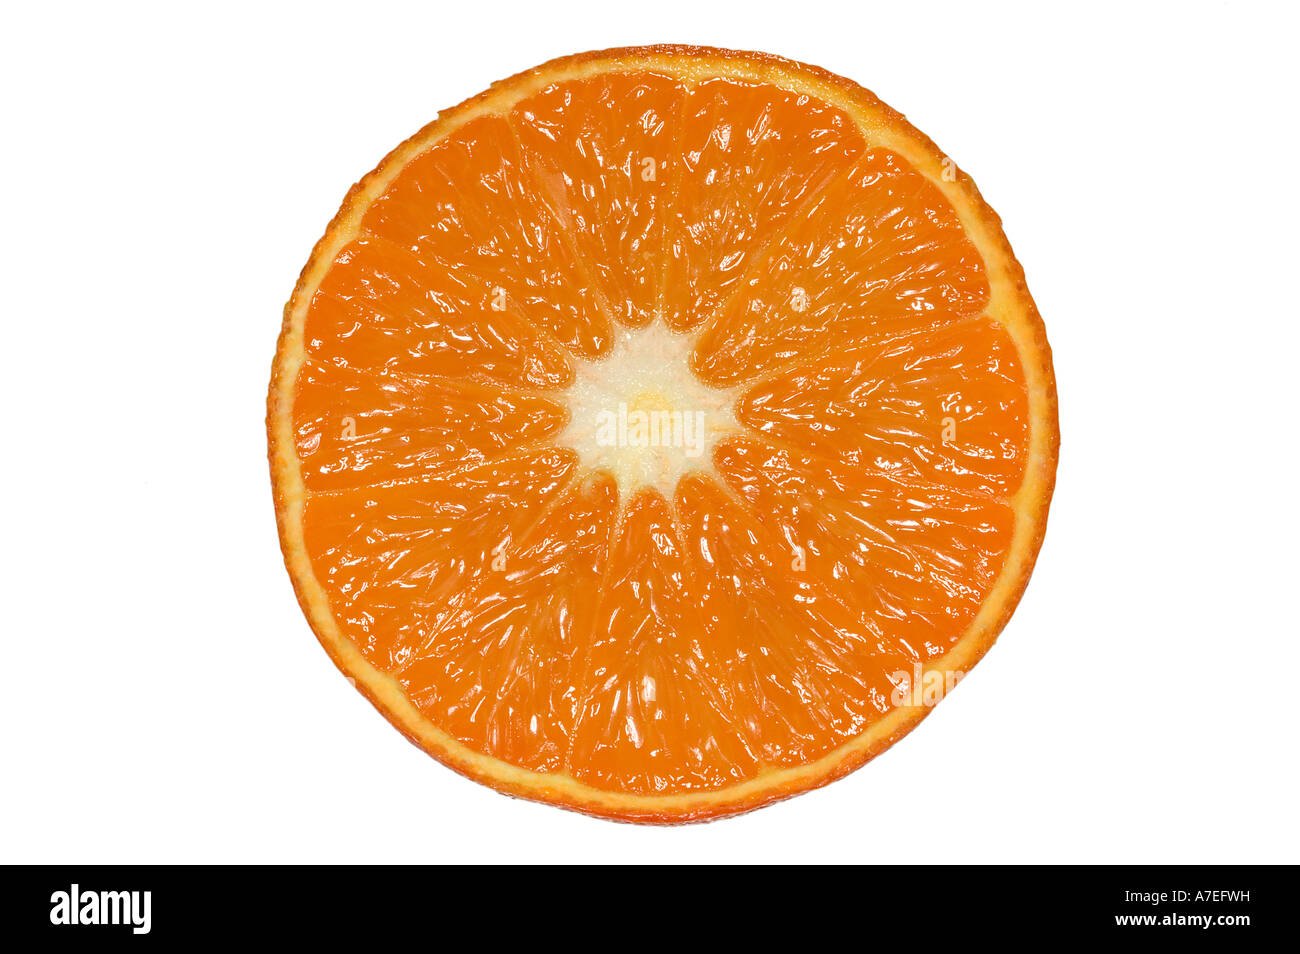 Slice of juicy Orange isolated on white Stock Photo